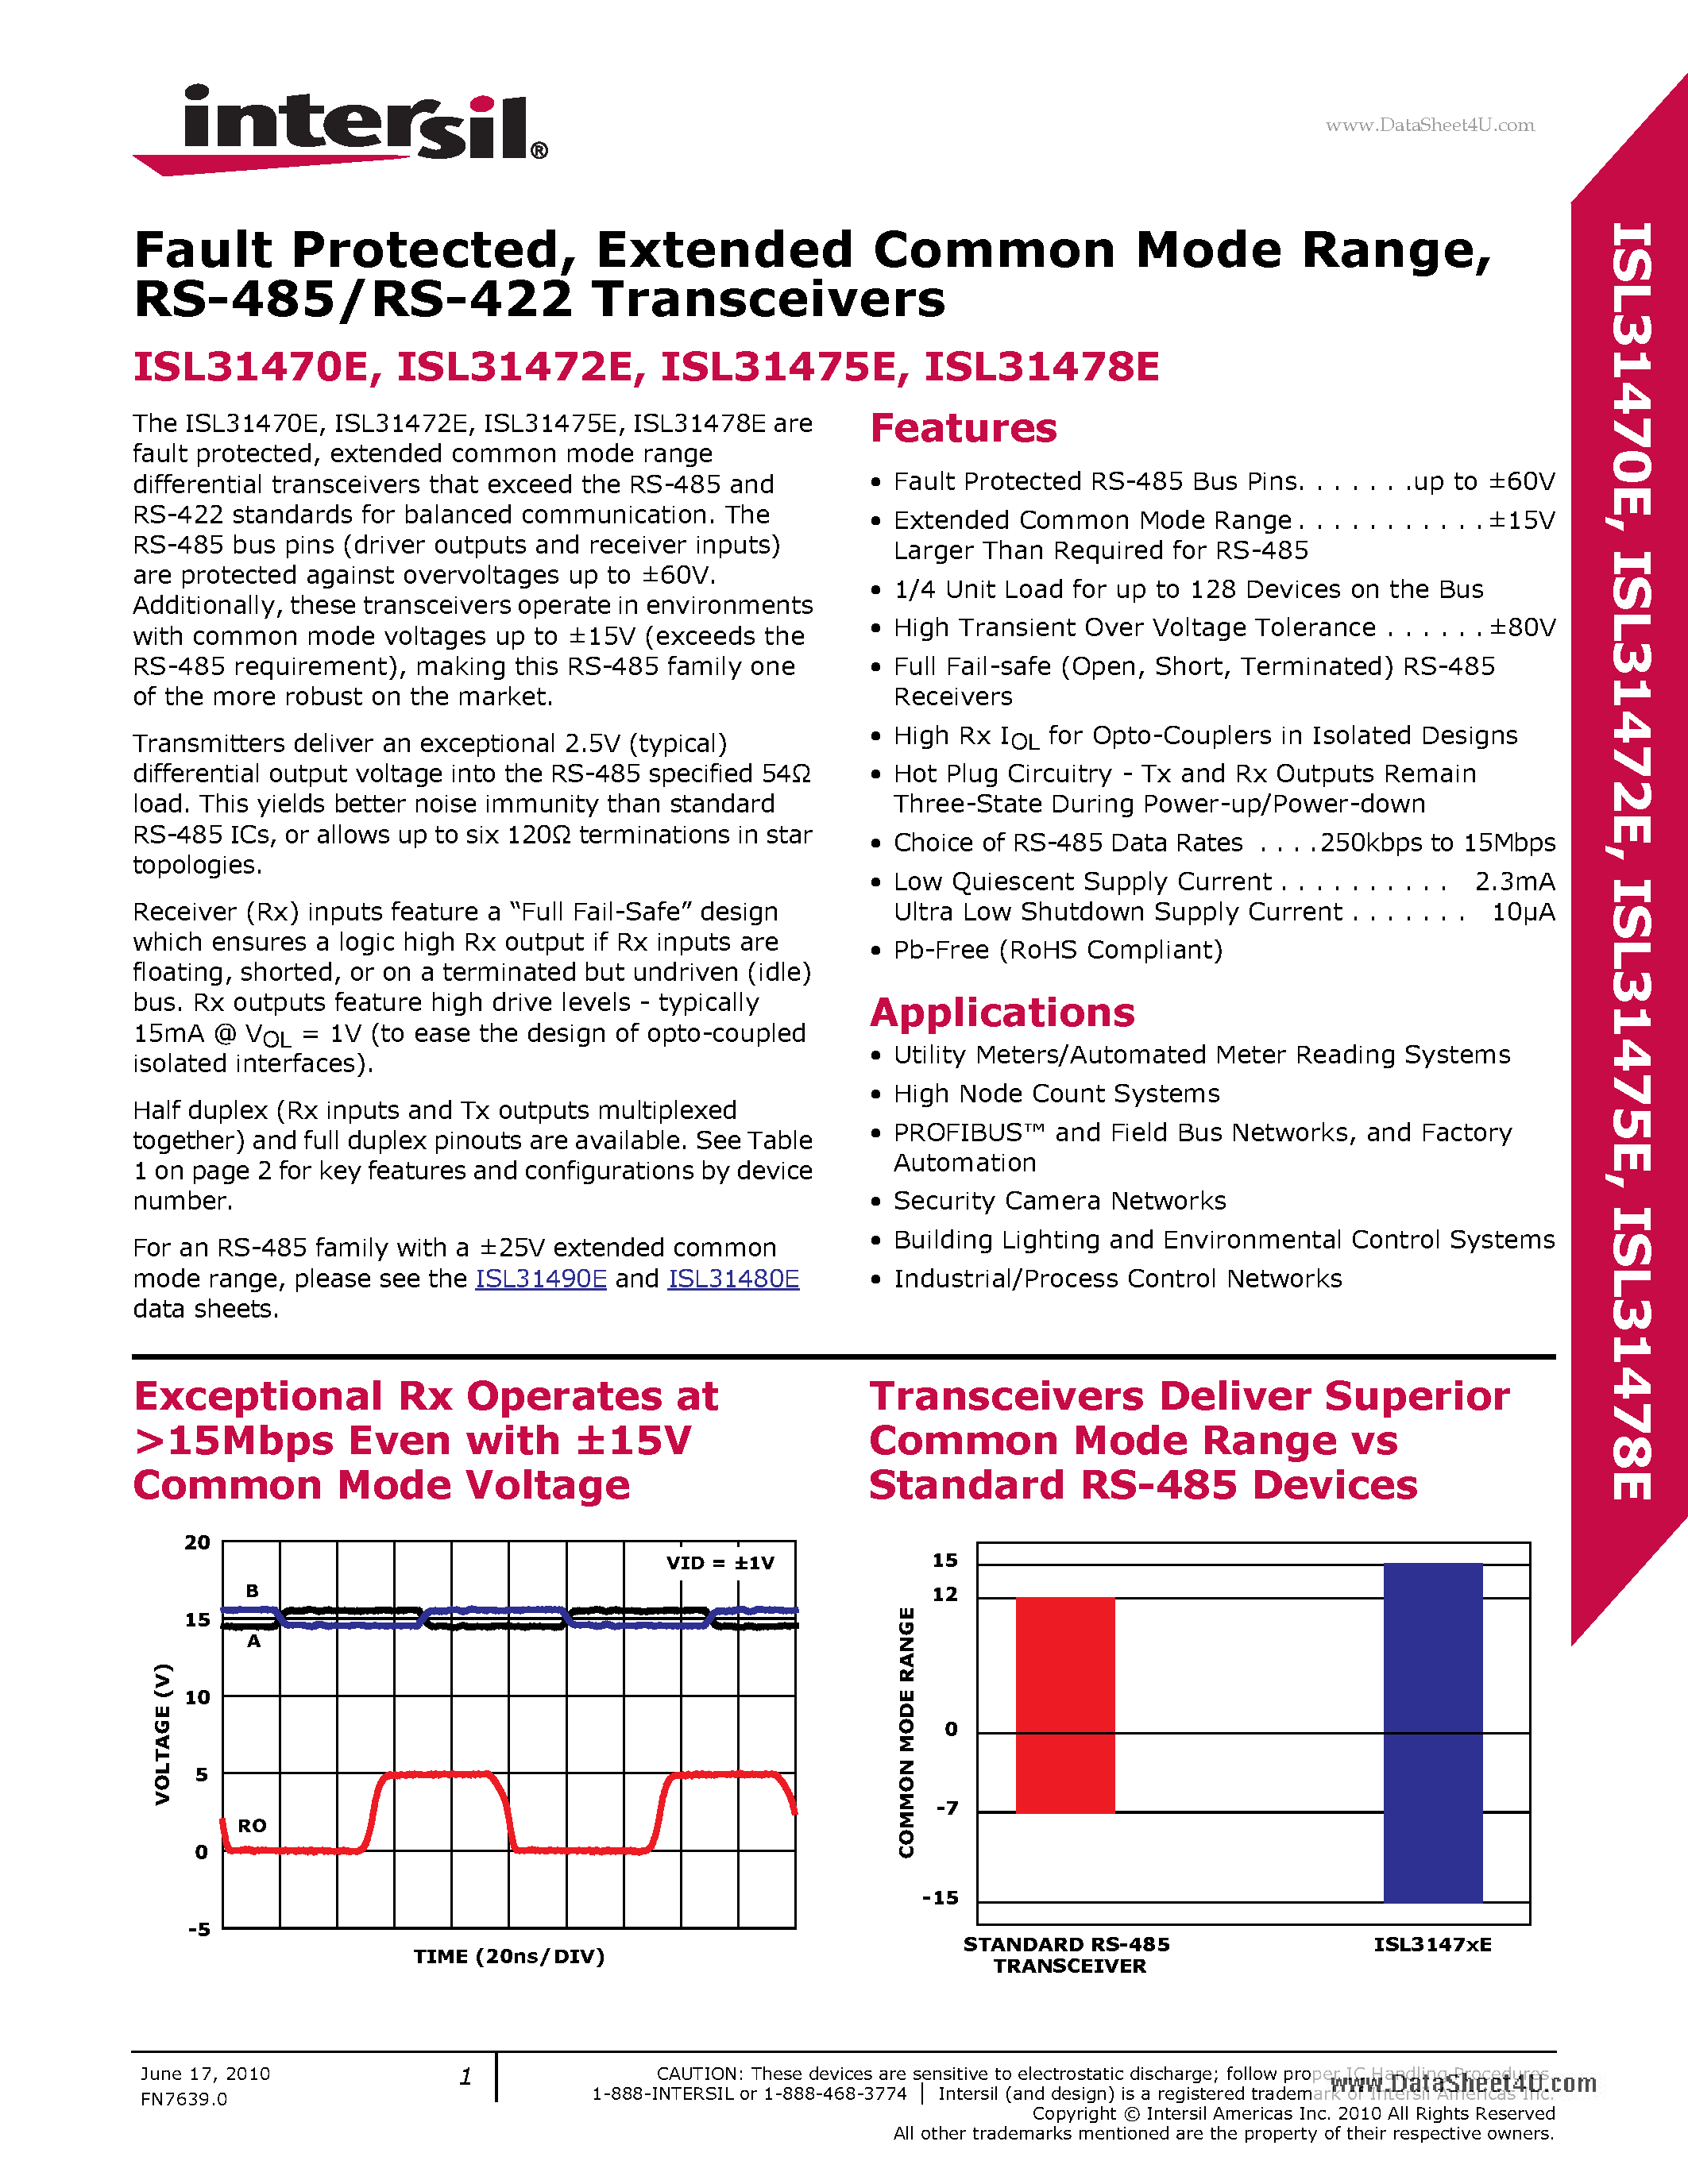 Даташит ISL31470E - (ISL31470E - ISL31478E) RS-485/RS-422 Transceivers страница 1